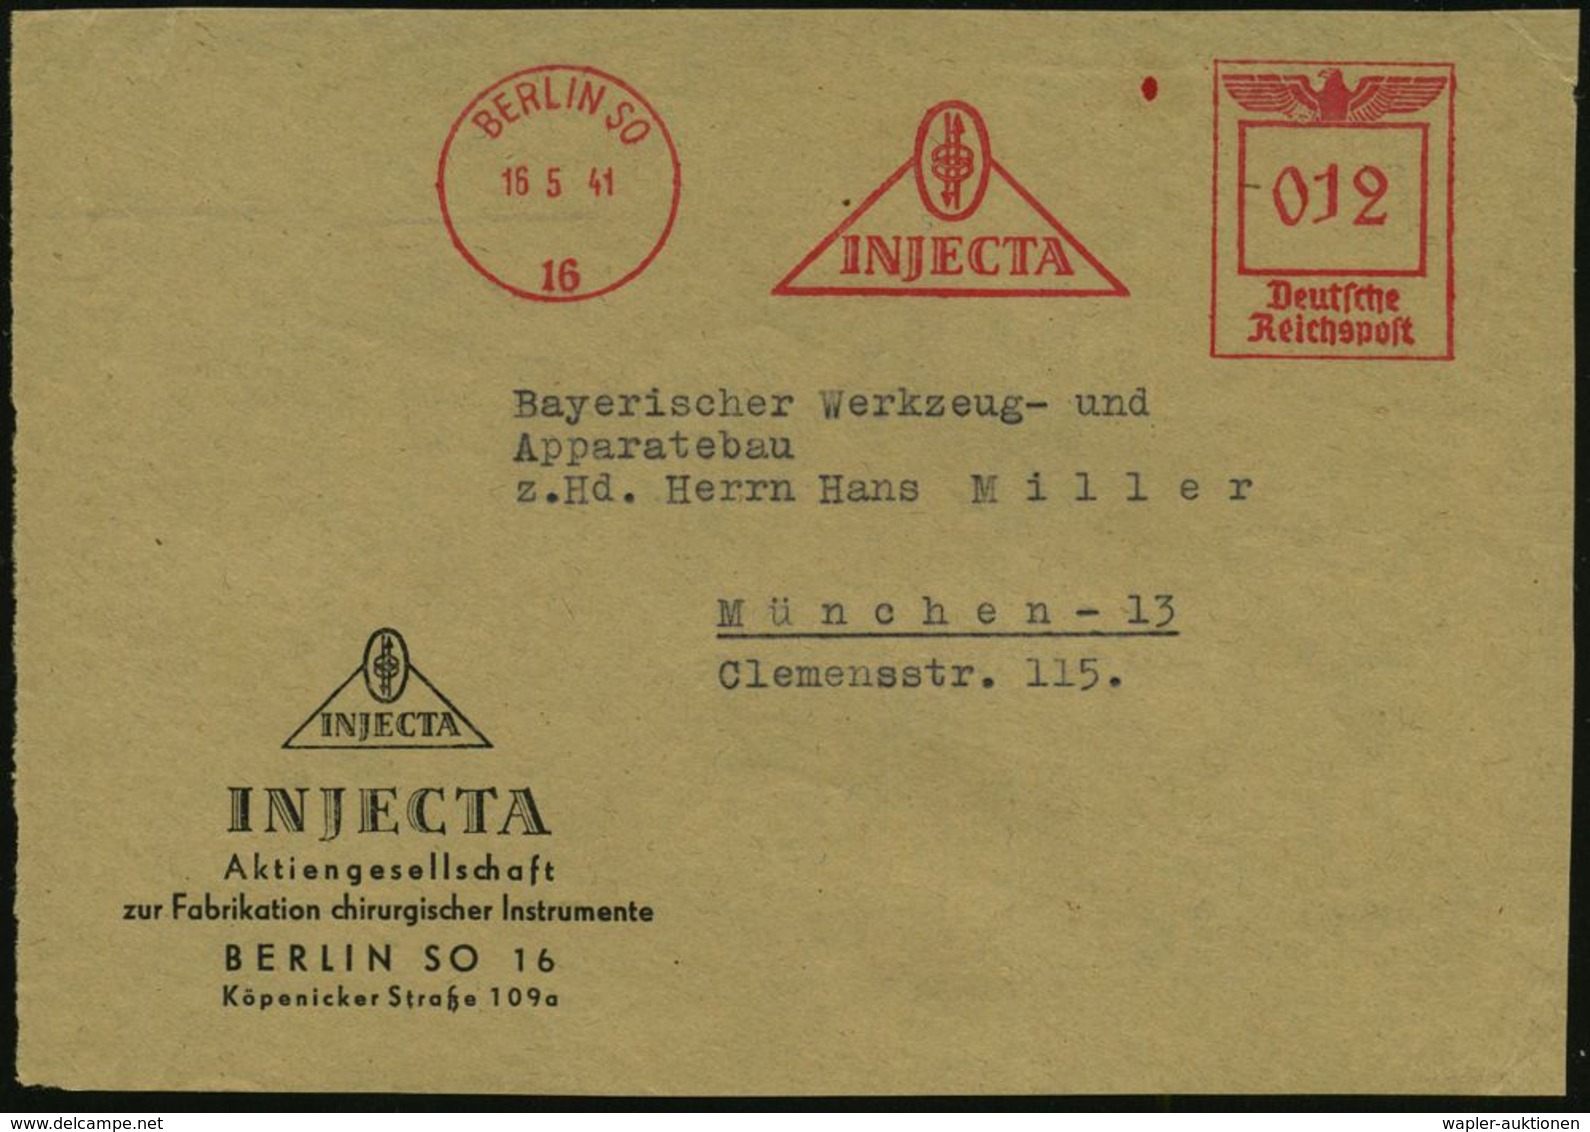 MEDIZINISCHE AUSRÜSTUNG & INSTRUMENTE : BERLIN SO/ 16/ INJECTA 1941 (16.5.) AFS (Logo) Motivgl. Firmen-Vs.: INJECTA, Fab - Médecine